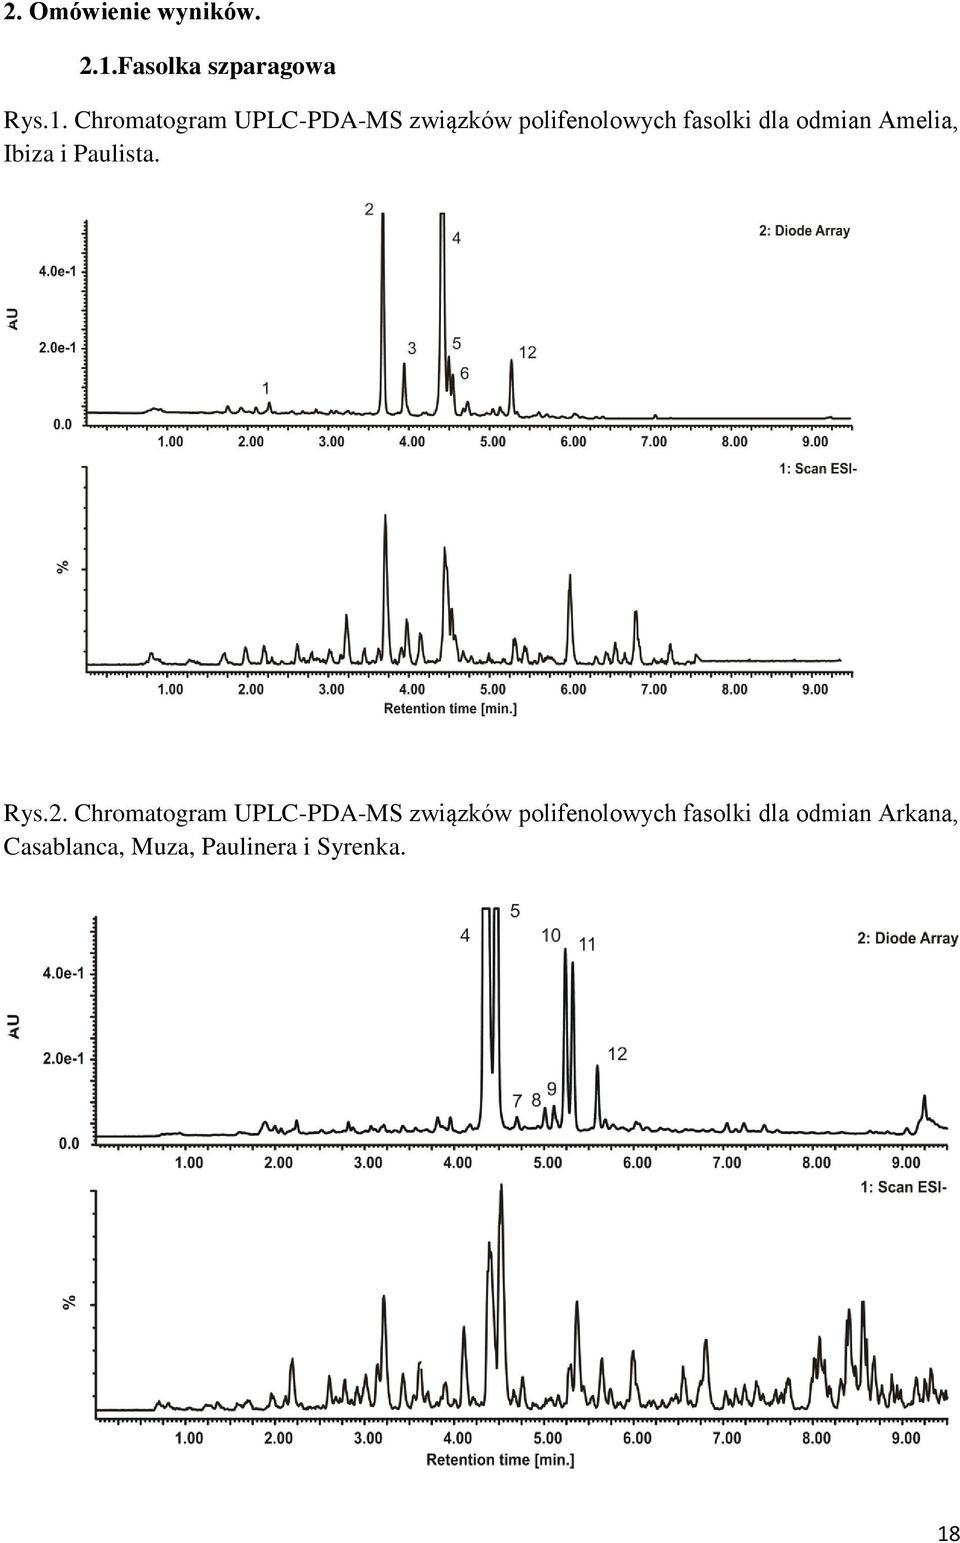 Chromatogram UPLC-PDA-MS związków polifenolowych fasolki dla odmian